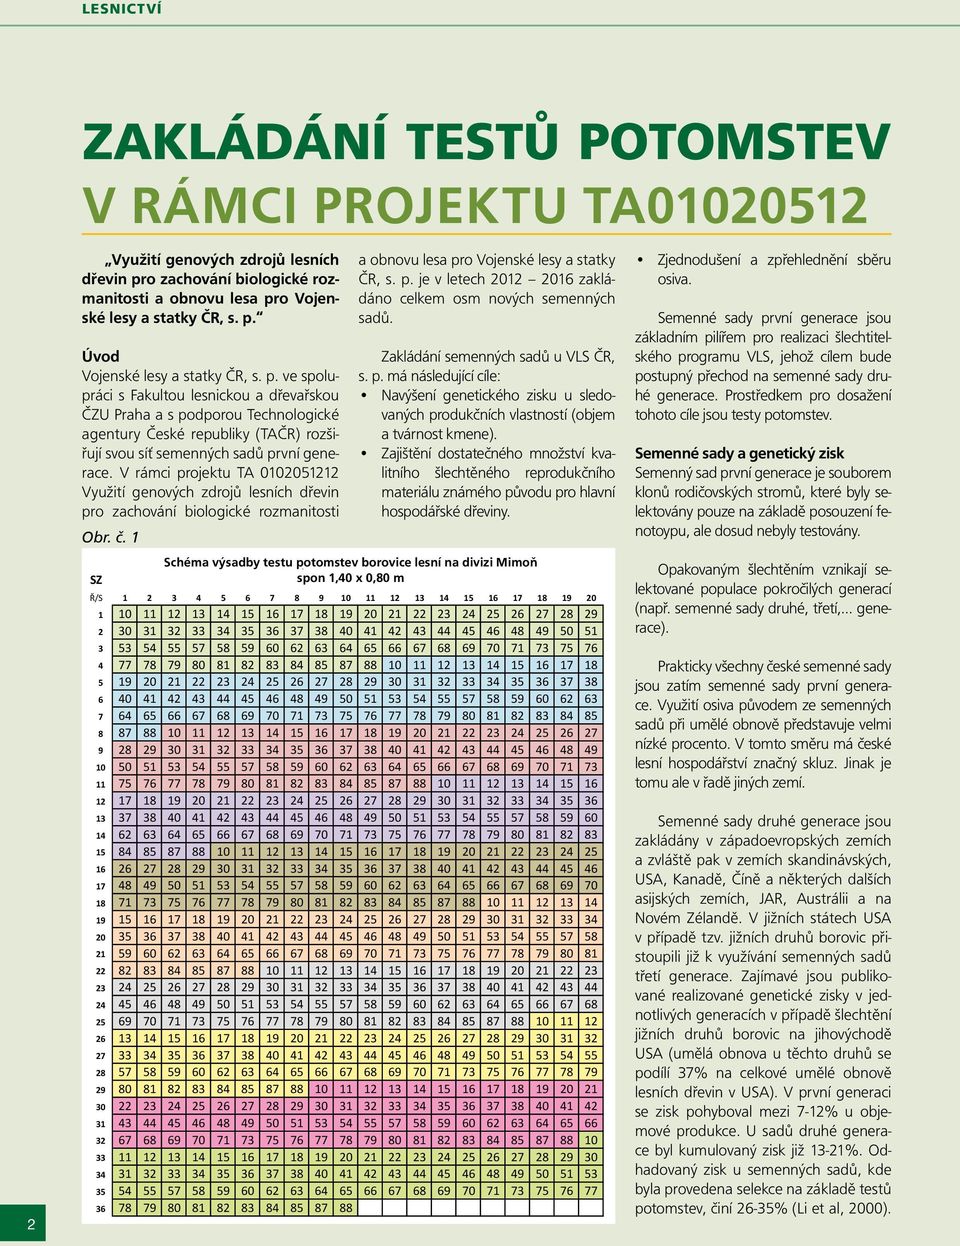 V rámci projektu TA 0102051212 Využití genových zdrojů lesních dřevin pro zachování biologické rozmanitosti Obr. č. 1 a obnovu lesa pro Vojenské lesy a statky ČR, s. p. je v letech 2012 2016 zakládáno celkem osm nových semenných sadů.